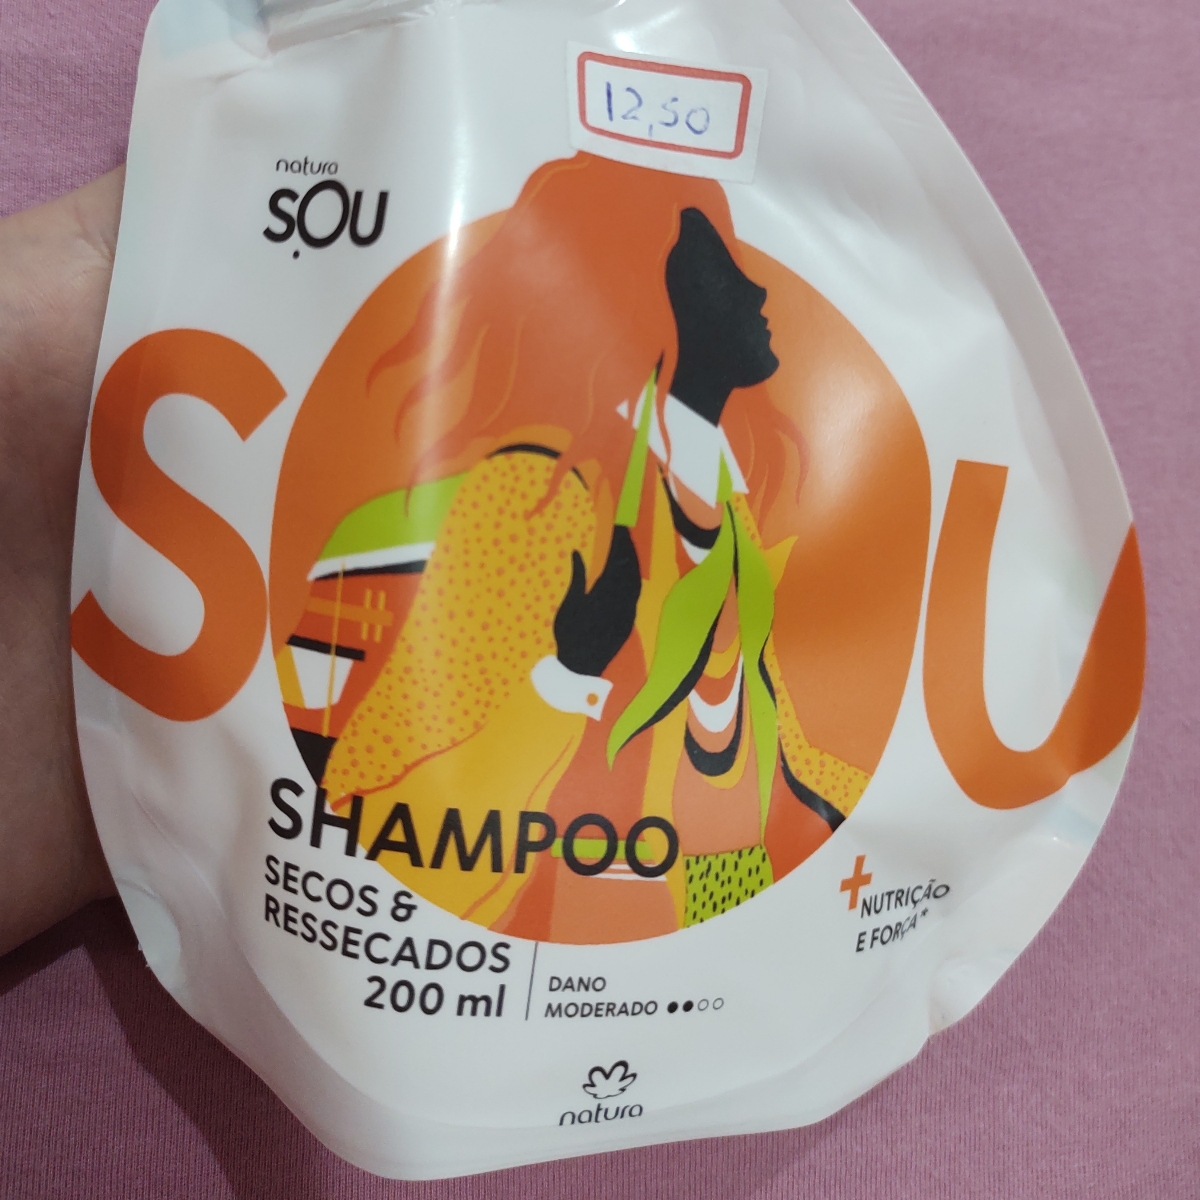 Natura Shampoo Para Cabelos Secos e Ressecados - Linha Sou Reviews |  abillion